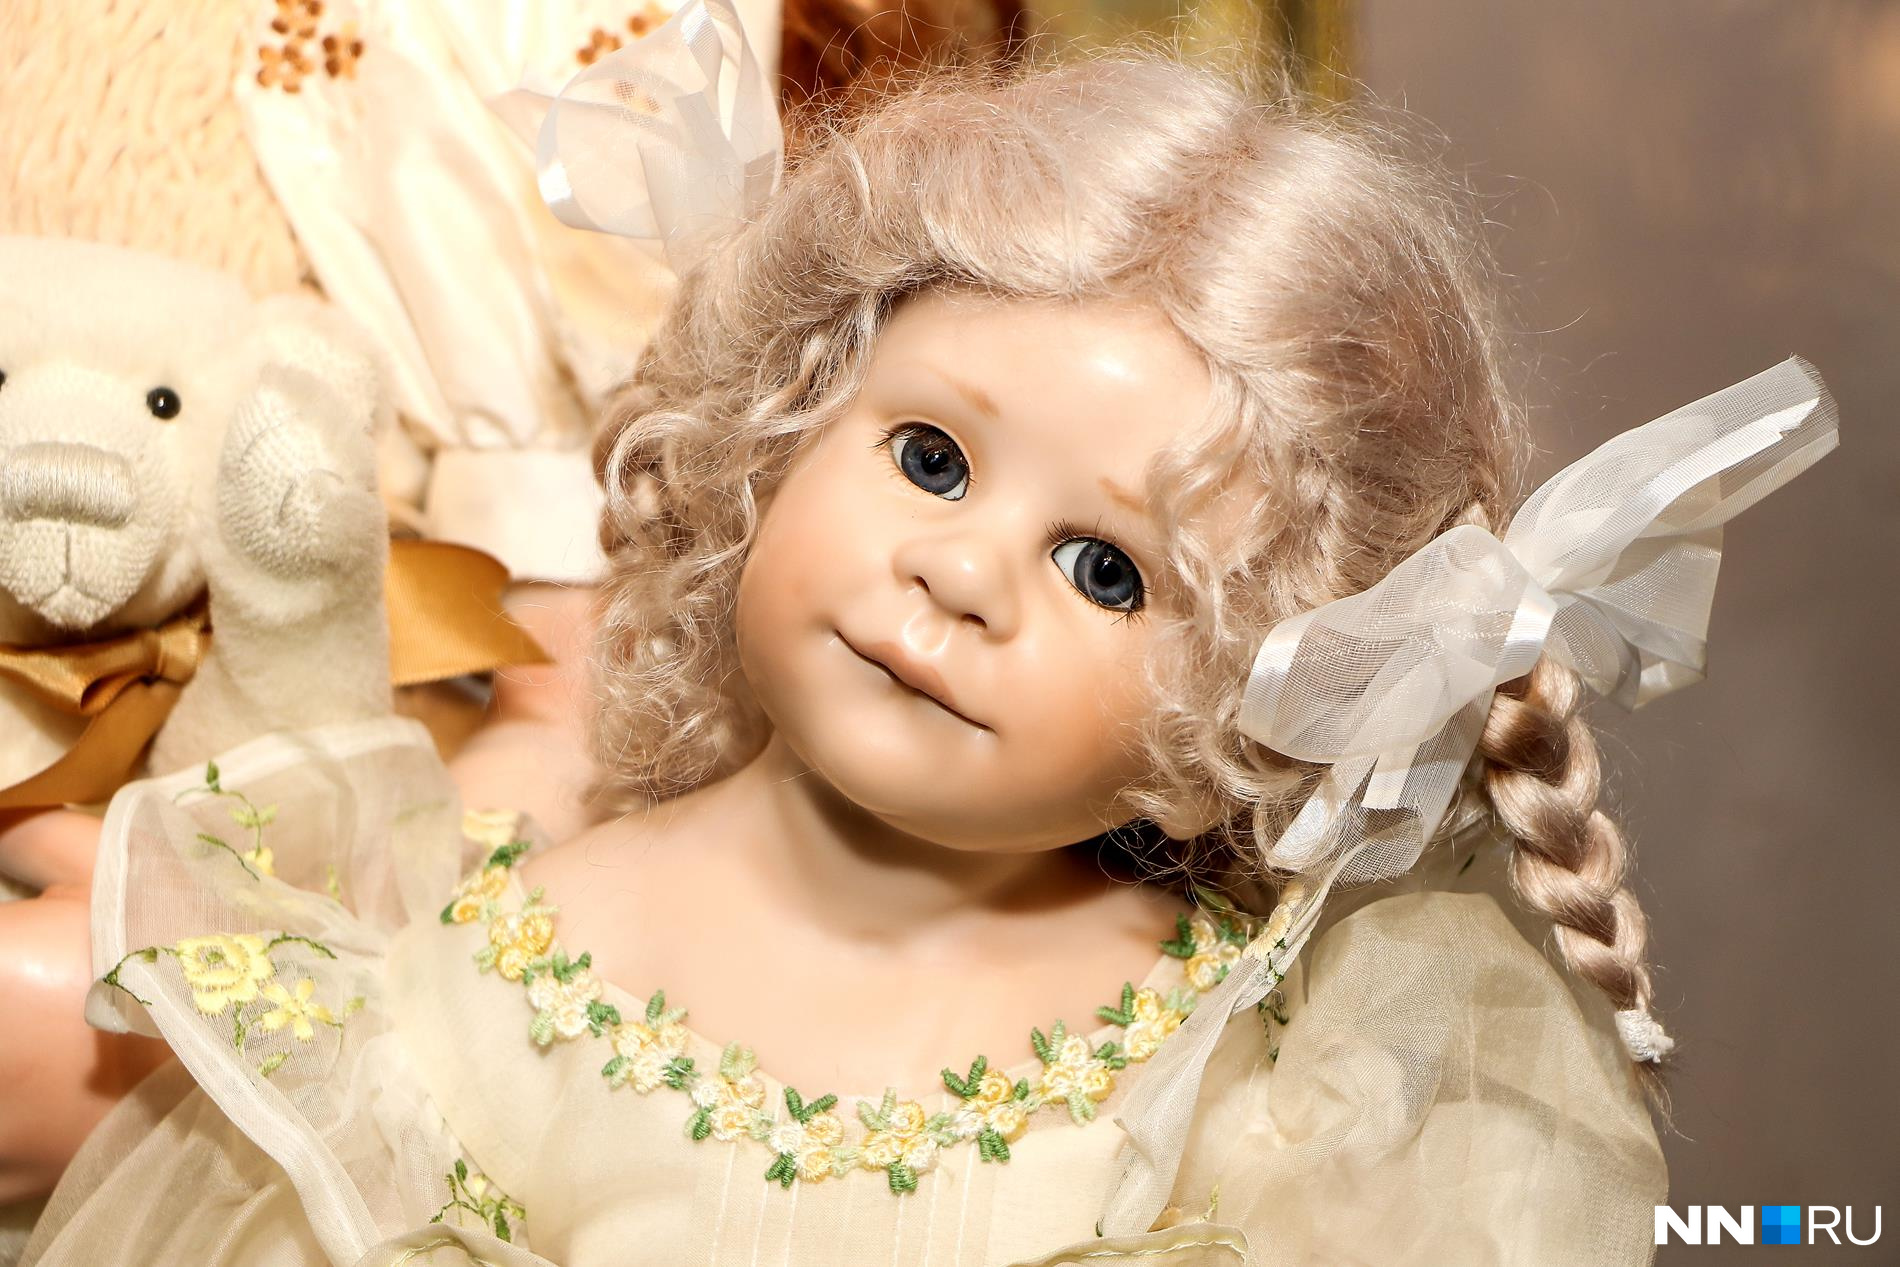 Нижний Новгород музей кукол Ольги Лобачевой. Галерея кукол Нижний Новгород. Отчего сегодня куклы